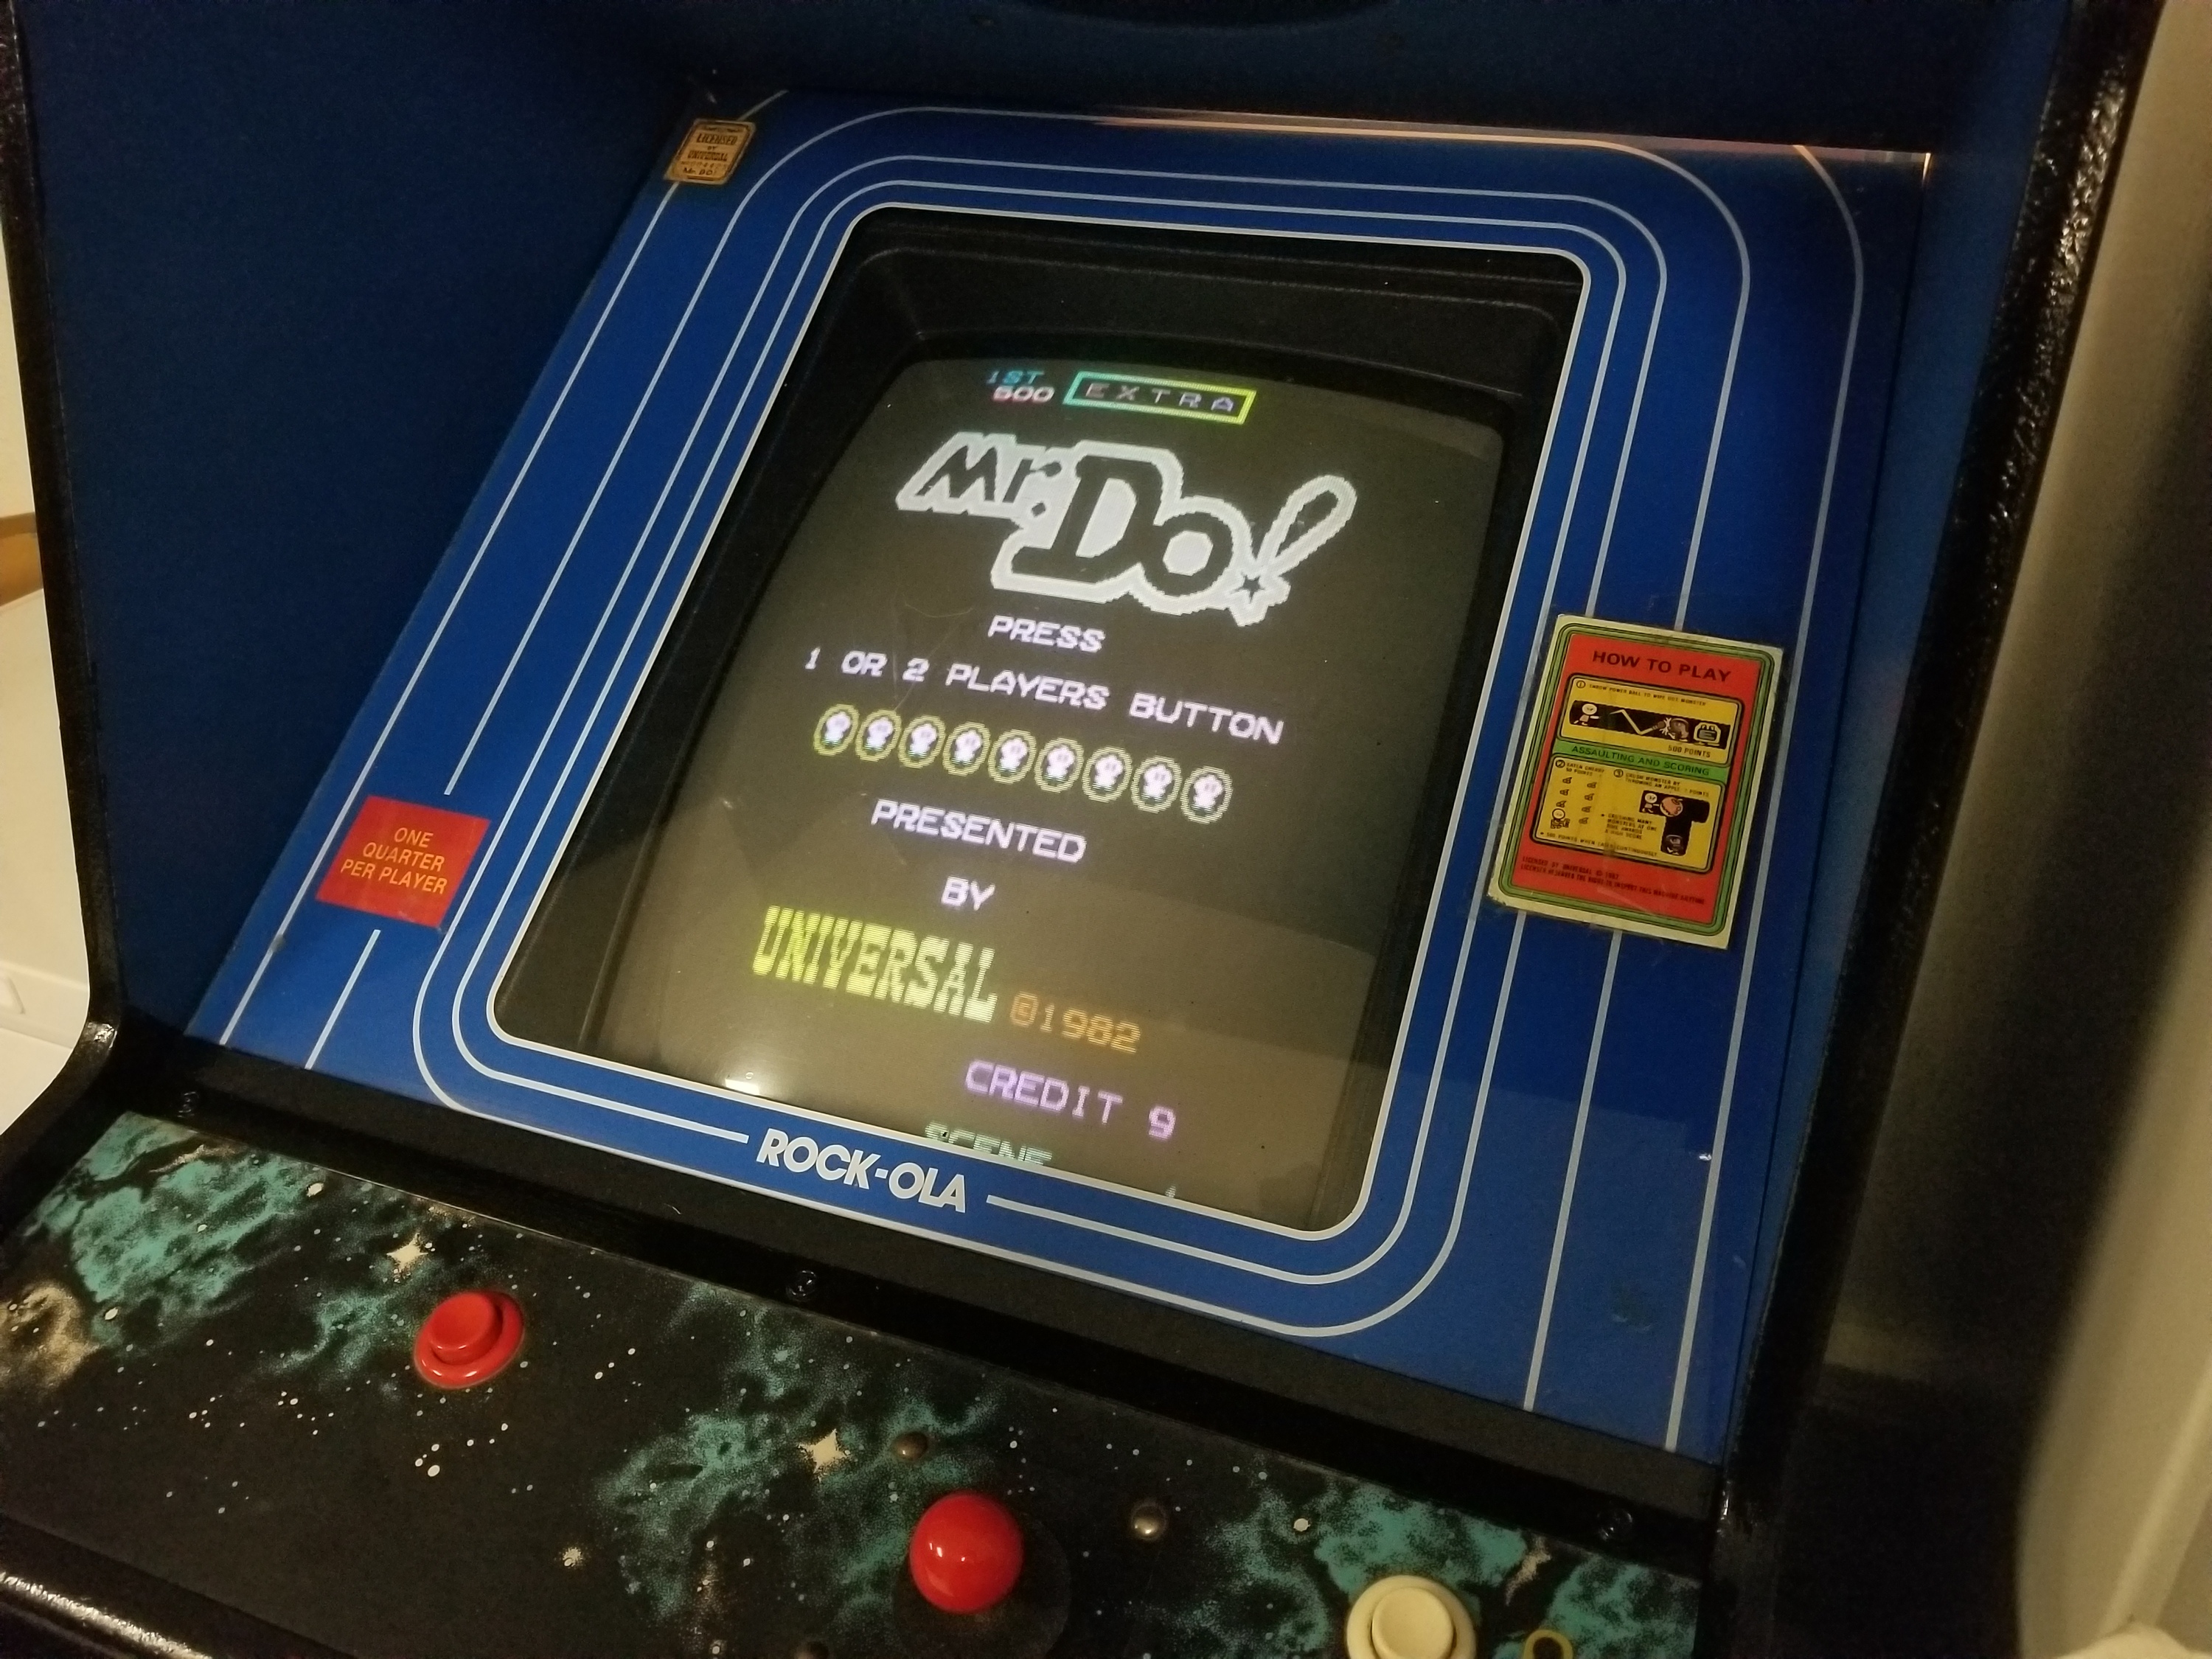 Mr. Do arcade game